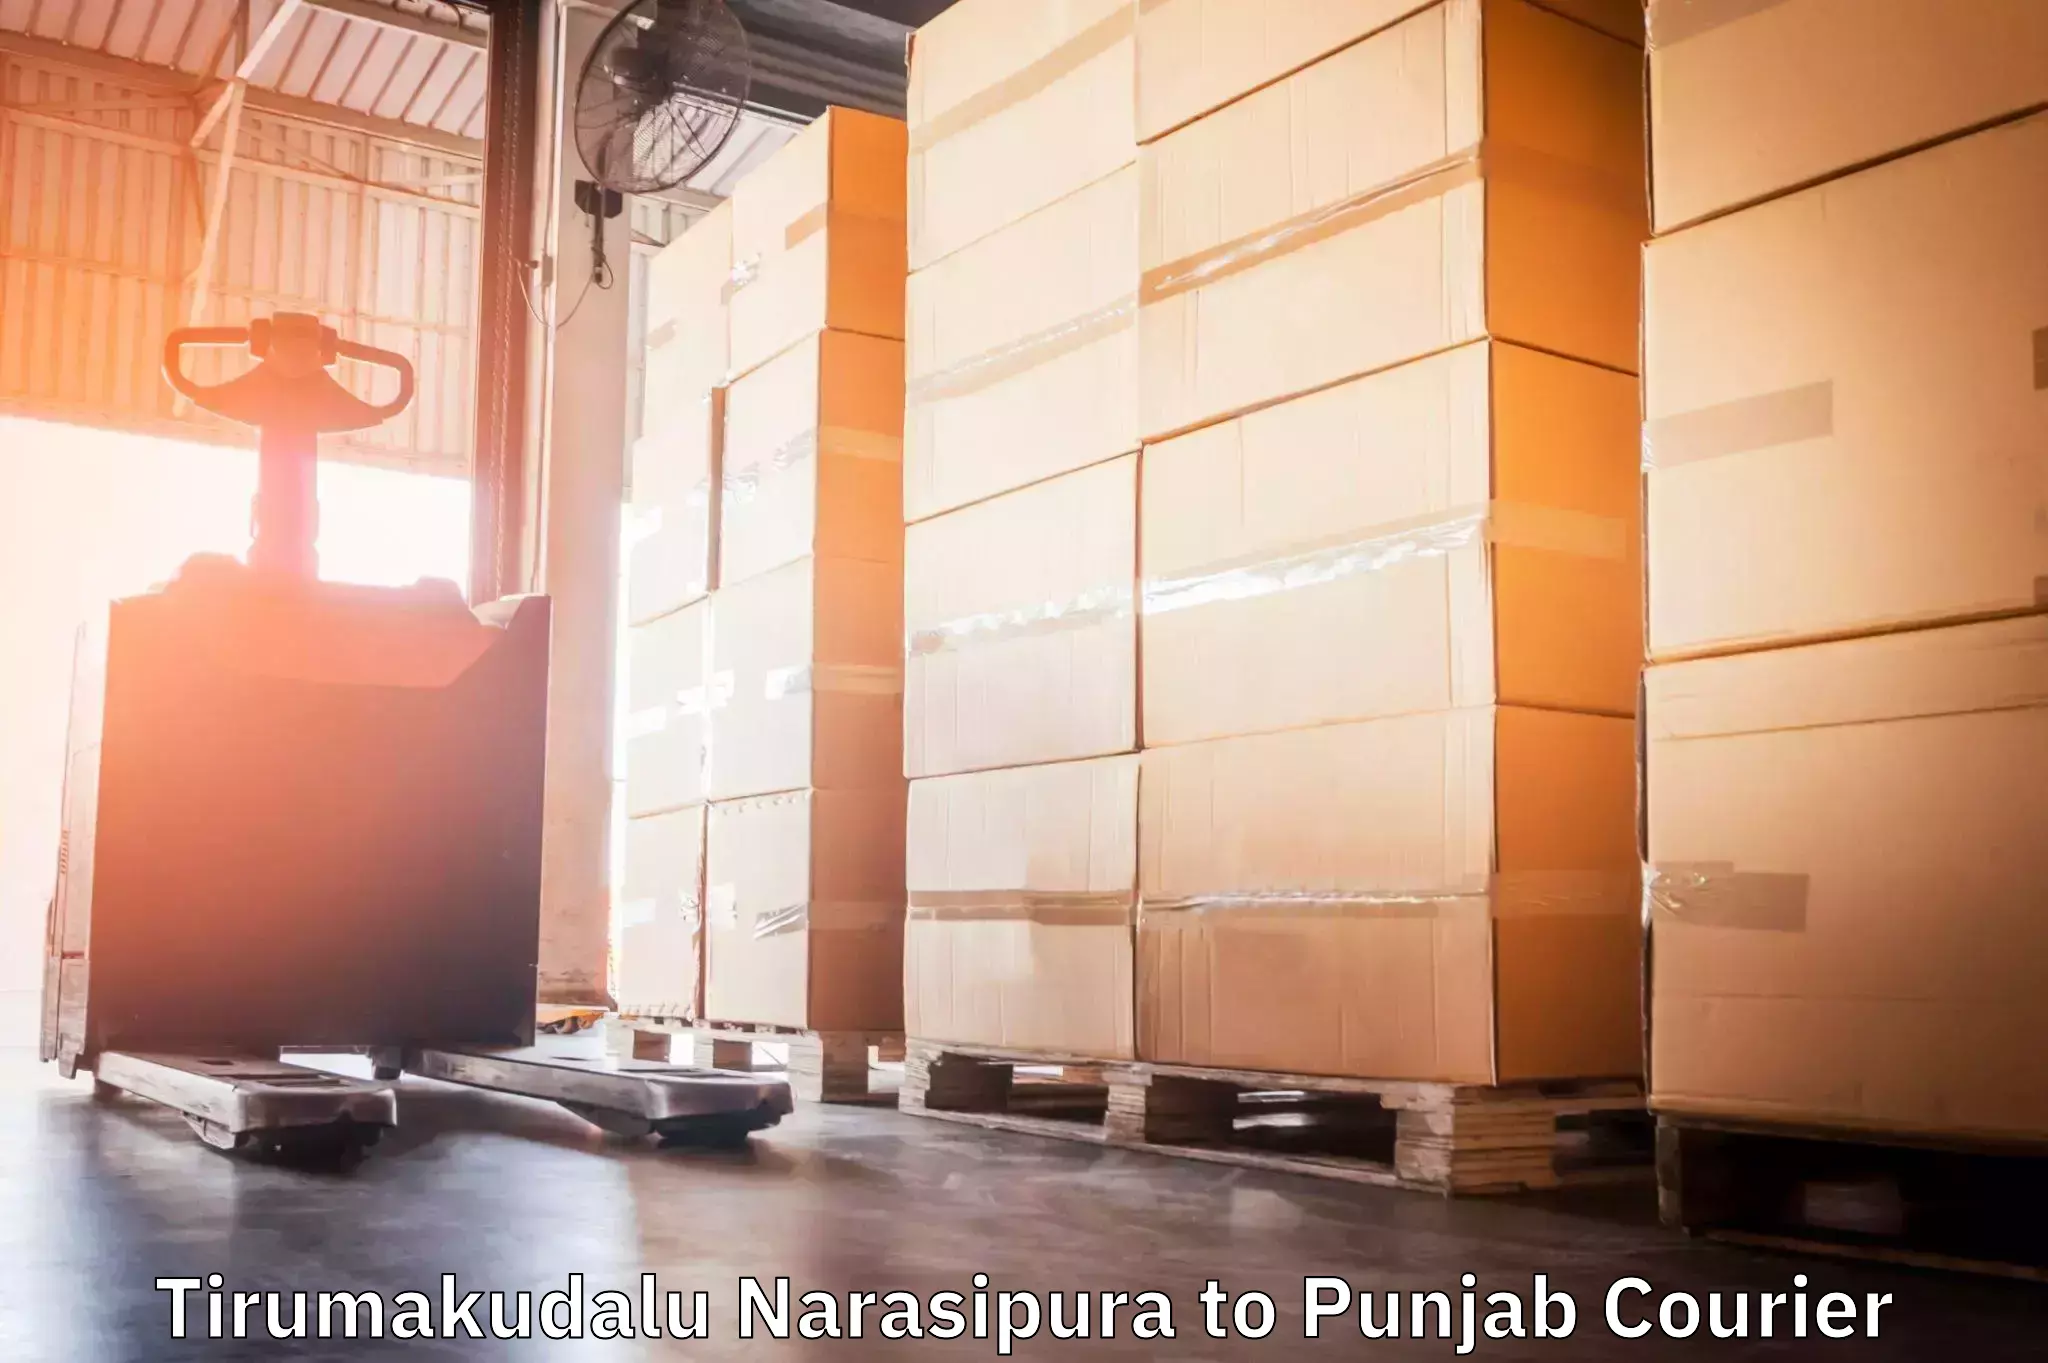 Fastest parcel delivery in Tirumakudalu Narasipura to Punjab